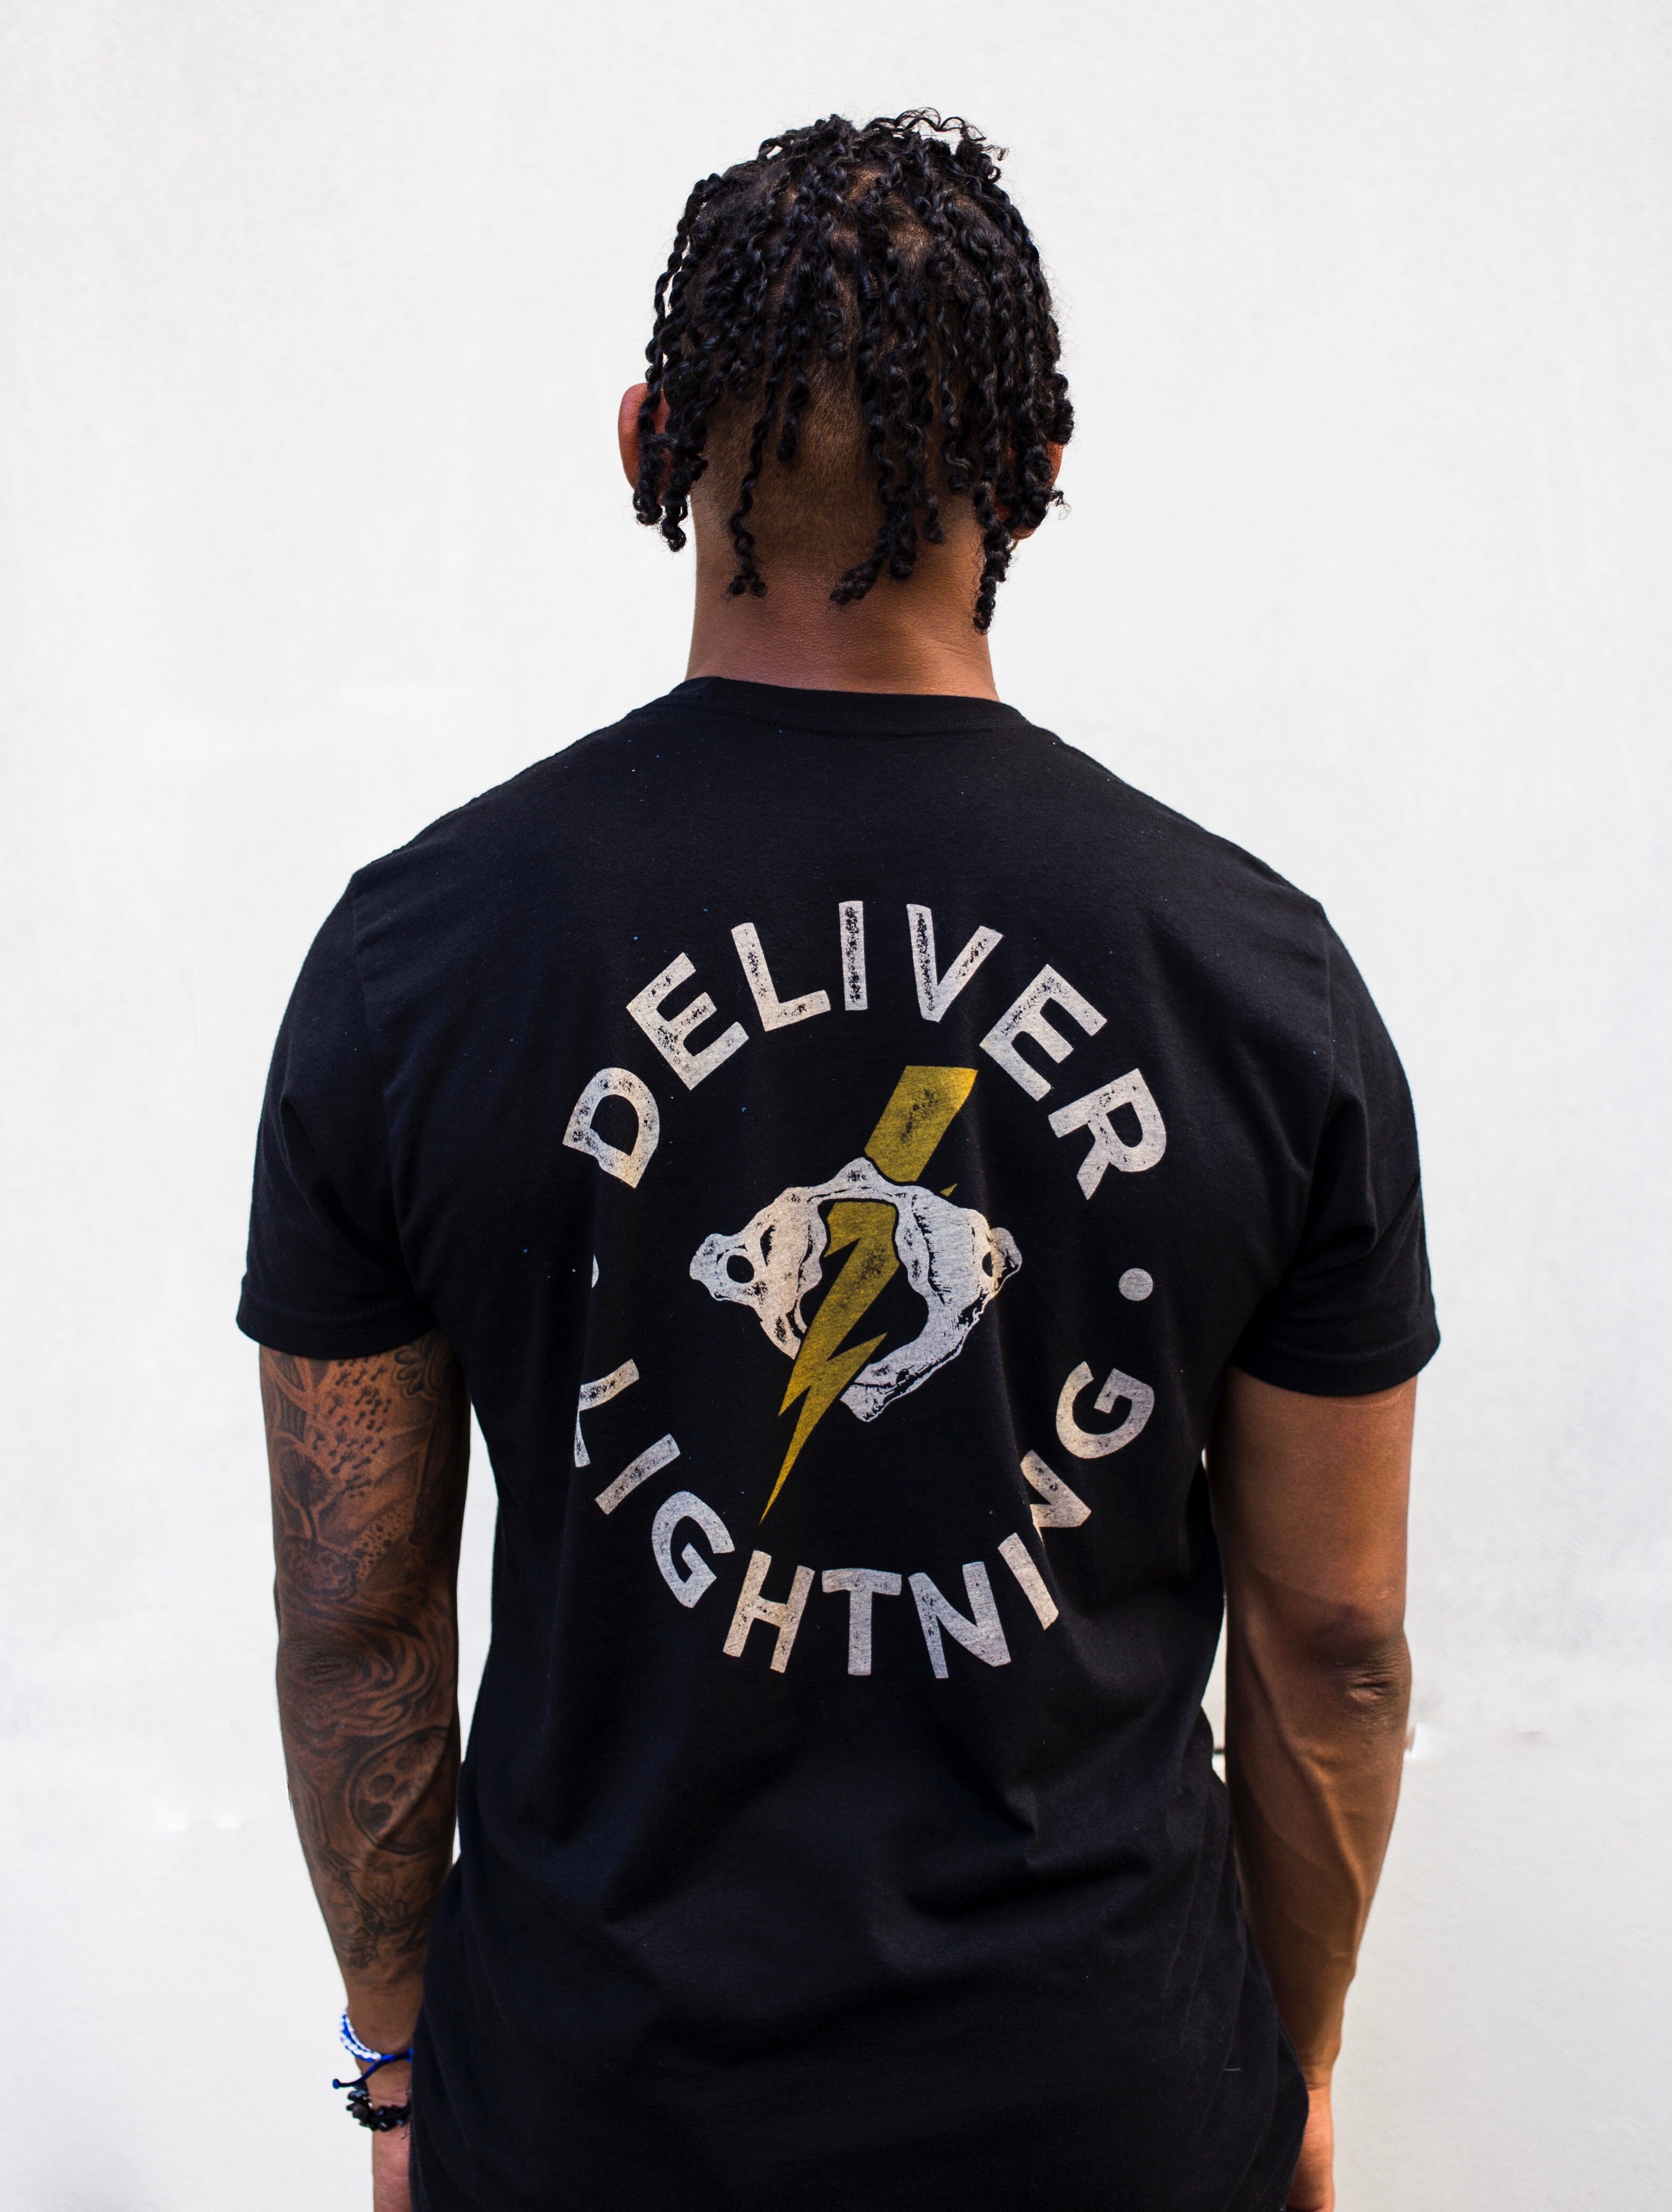 Deliver Lightning T-Shirt in Black